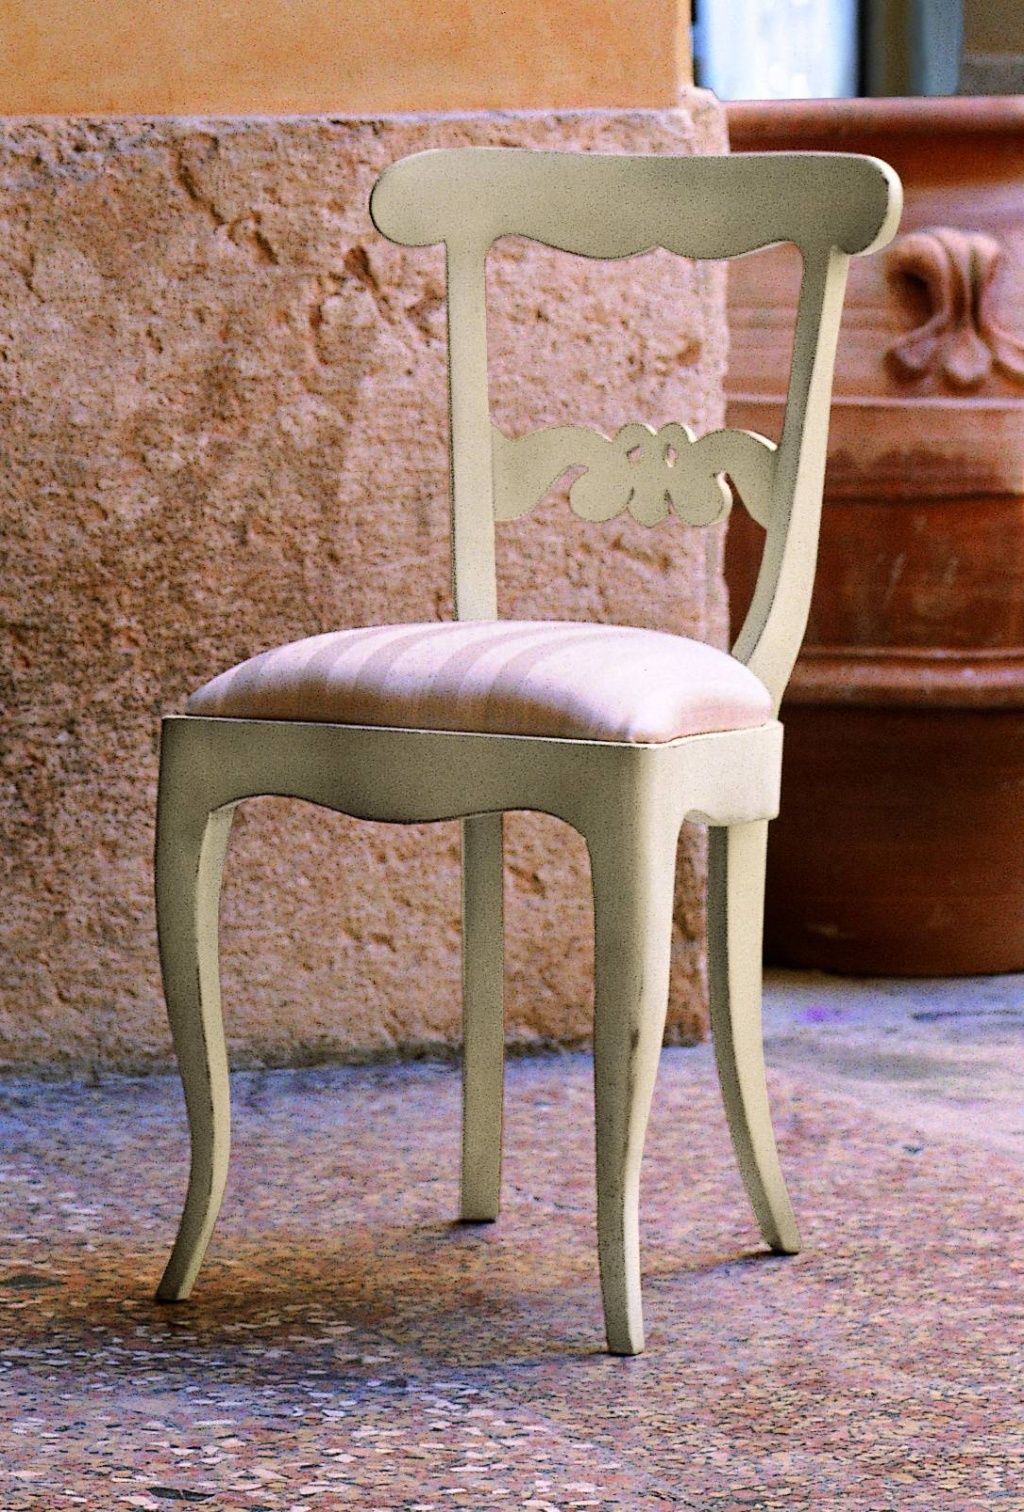 Stylová židle bez opěrek růžové pruhy 50x50x90 styl vintage Mdum - M DUM.cz